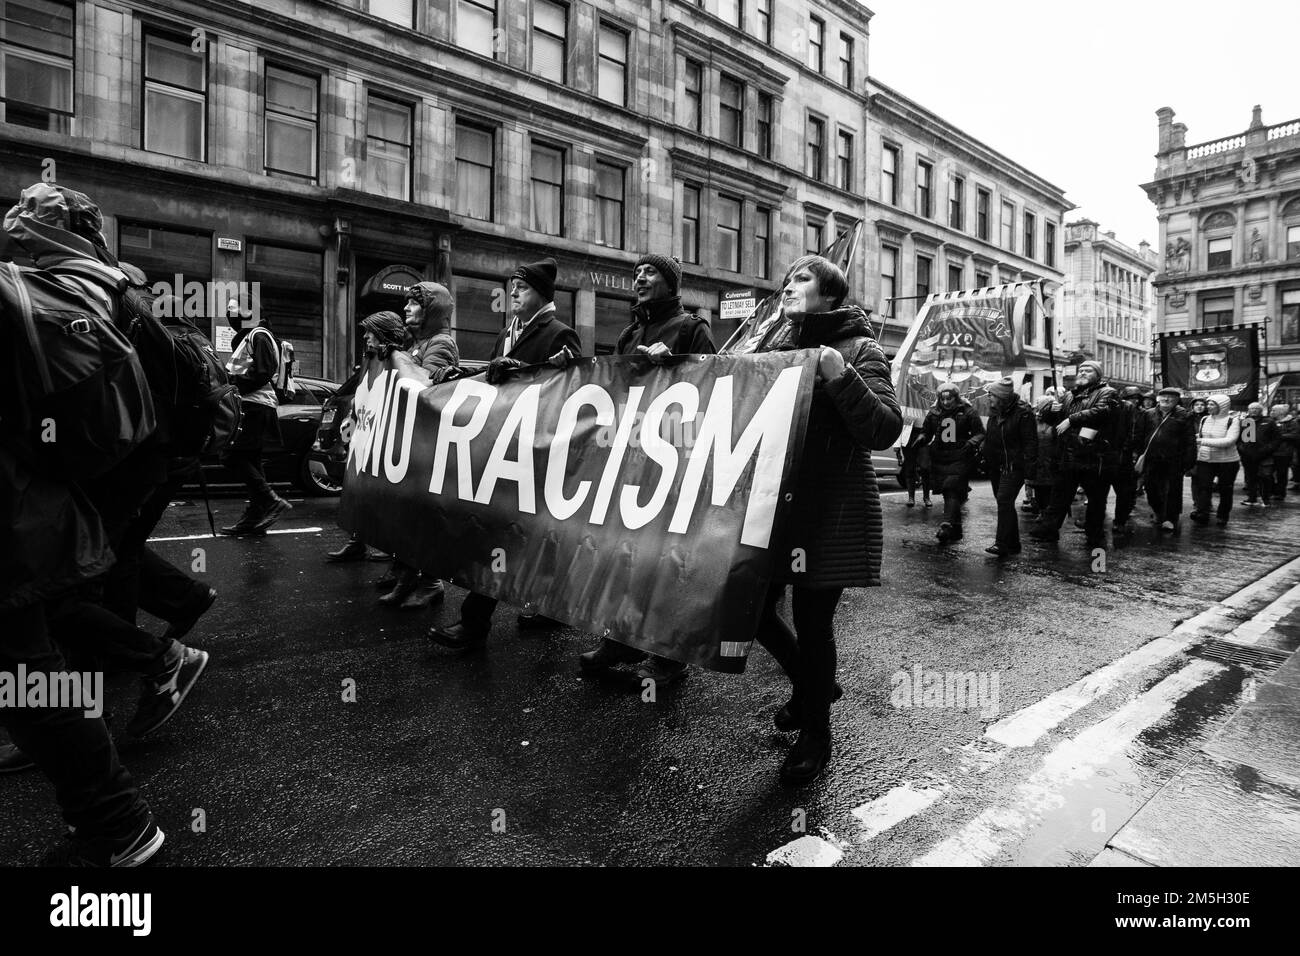 Ces images sont tirées du Scottish Trades Union Congress St Andrews Day anti racisme march qui a eu lieu de Glasgow Green à Bath Street Banque D'Images